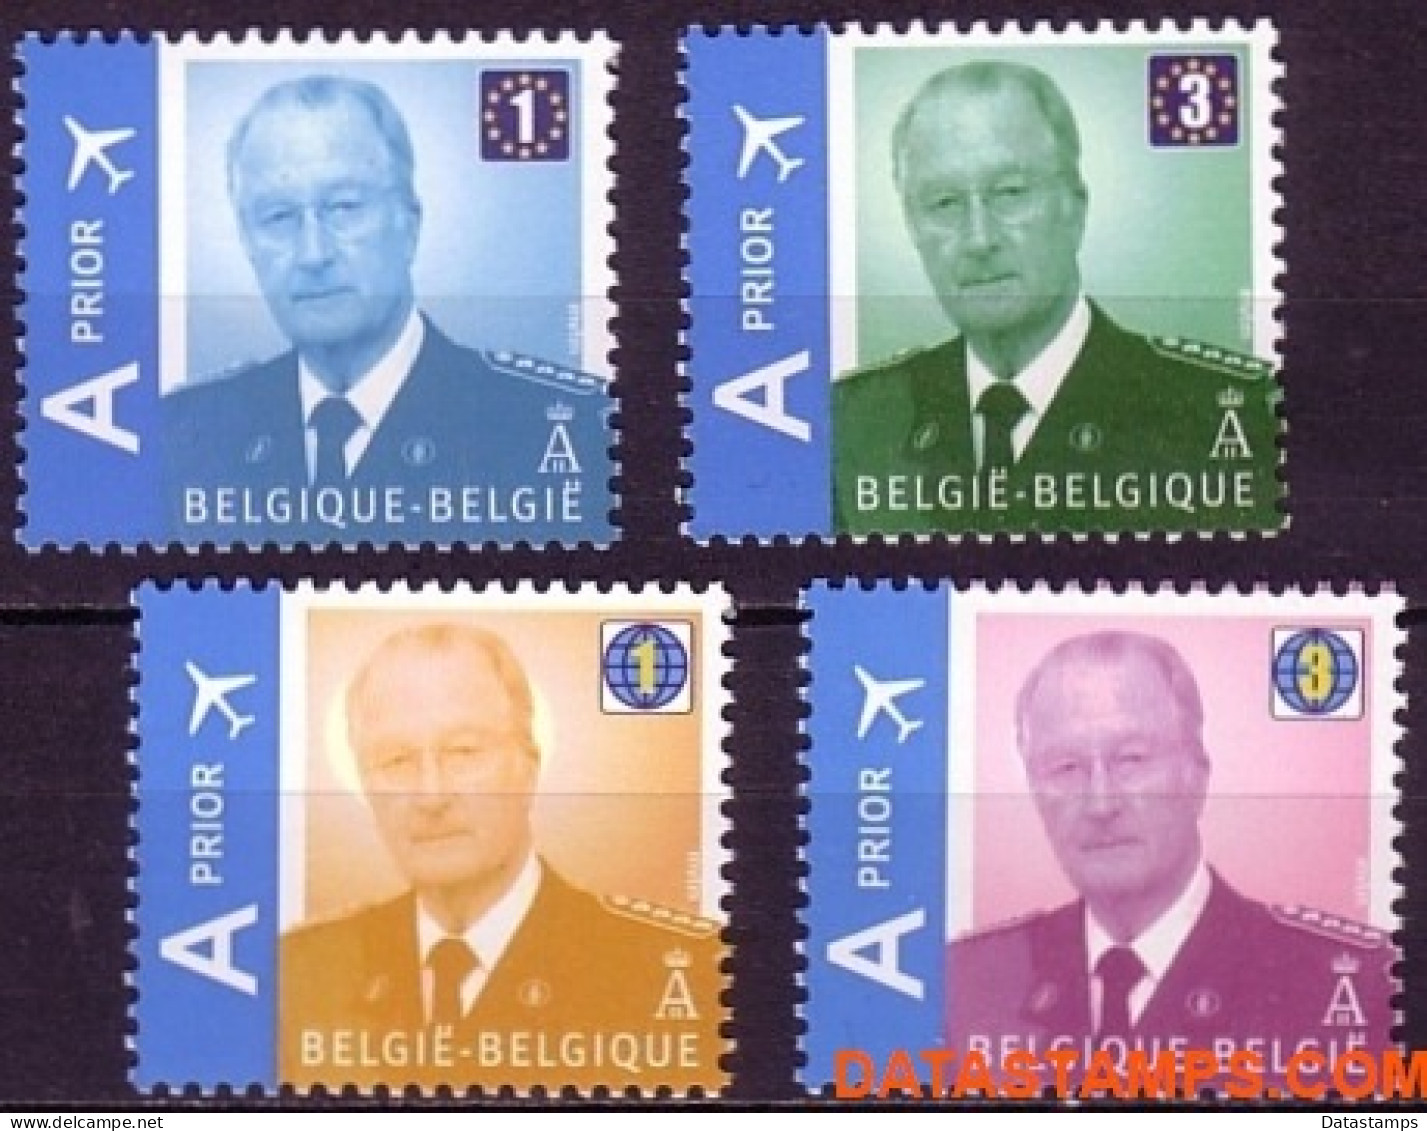 België 2009 - Mi:3913/3916, Yv:3848/3851, OBP:3867/3870, Stamp - XX - King Albert II Mvtm - Nieuw Frankeringssysteem - 1993-2013 Rey Alberto II (MVTM)